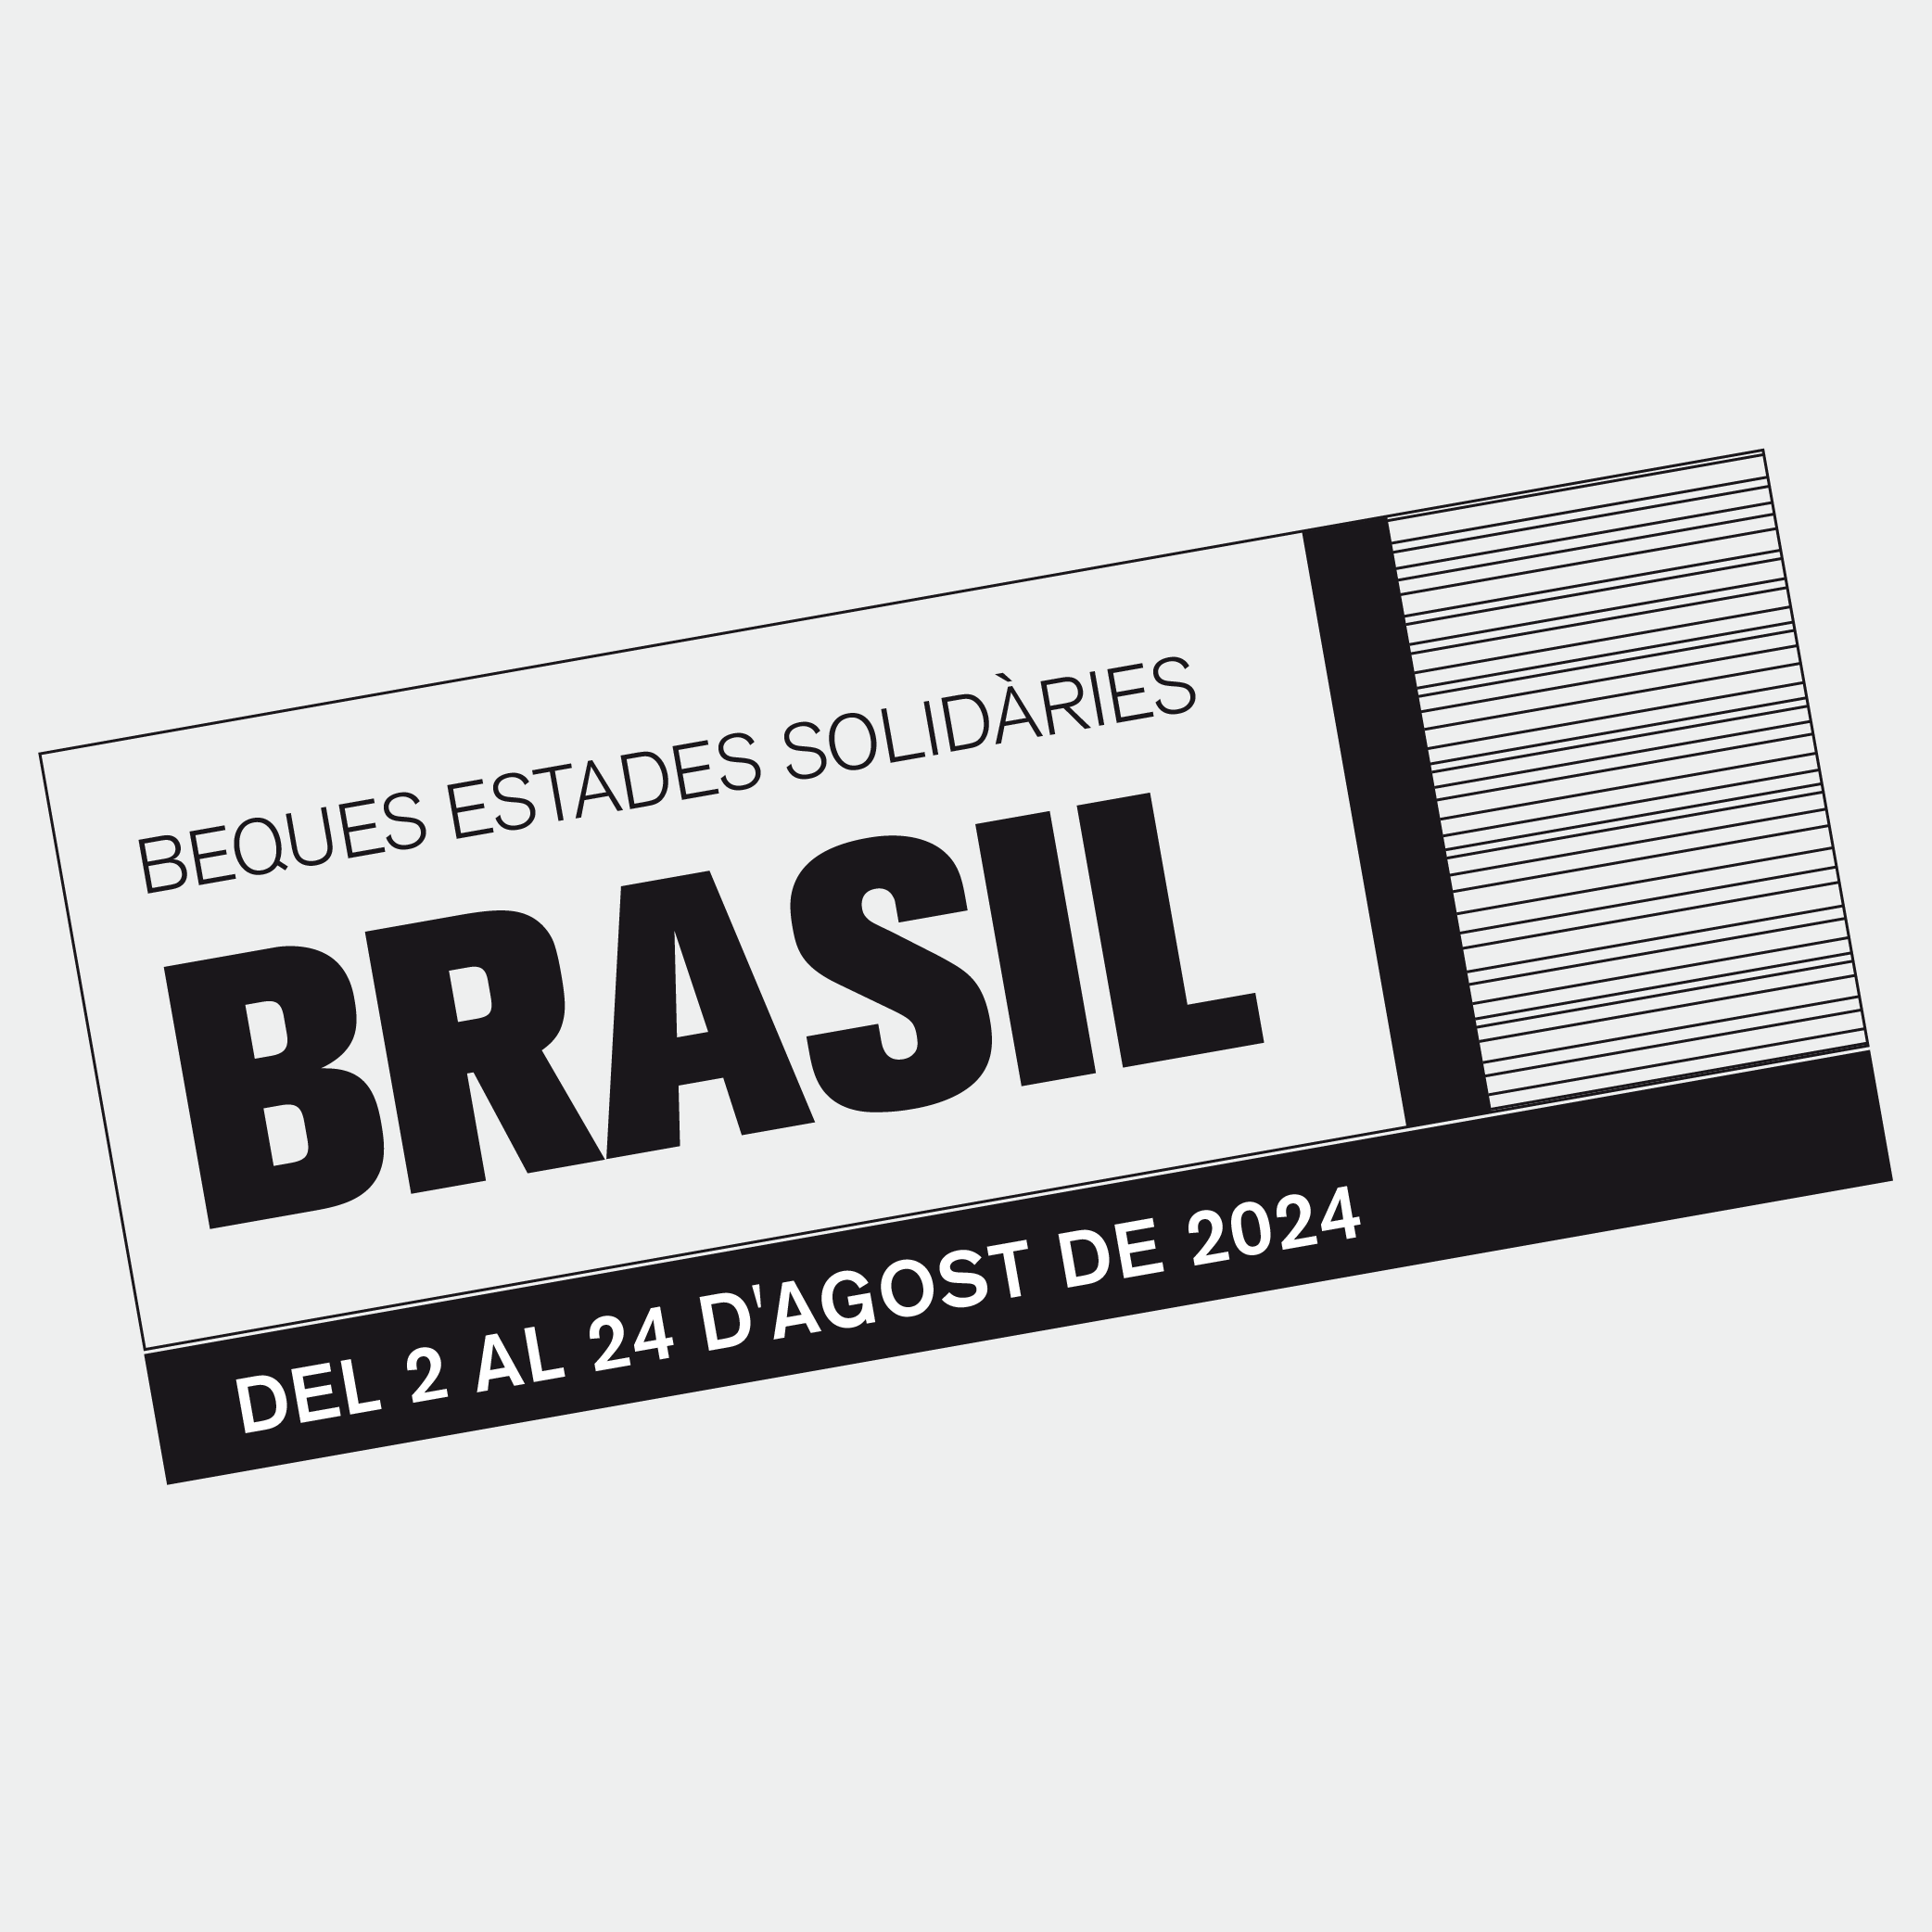 Brasil Estades